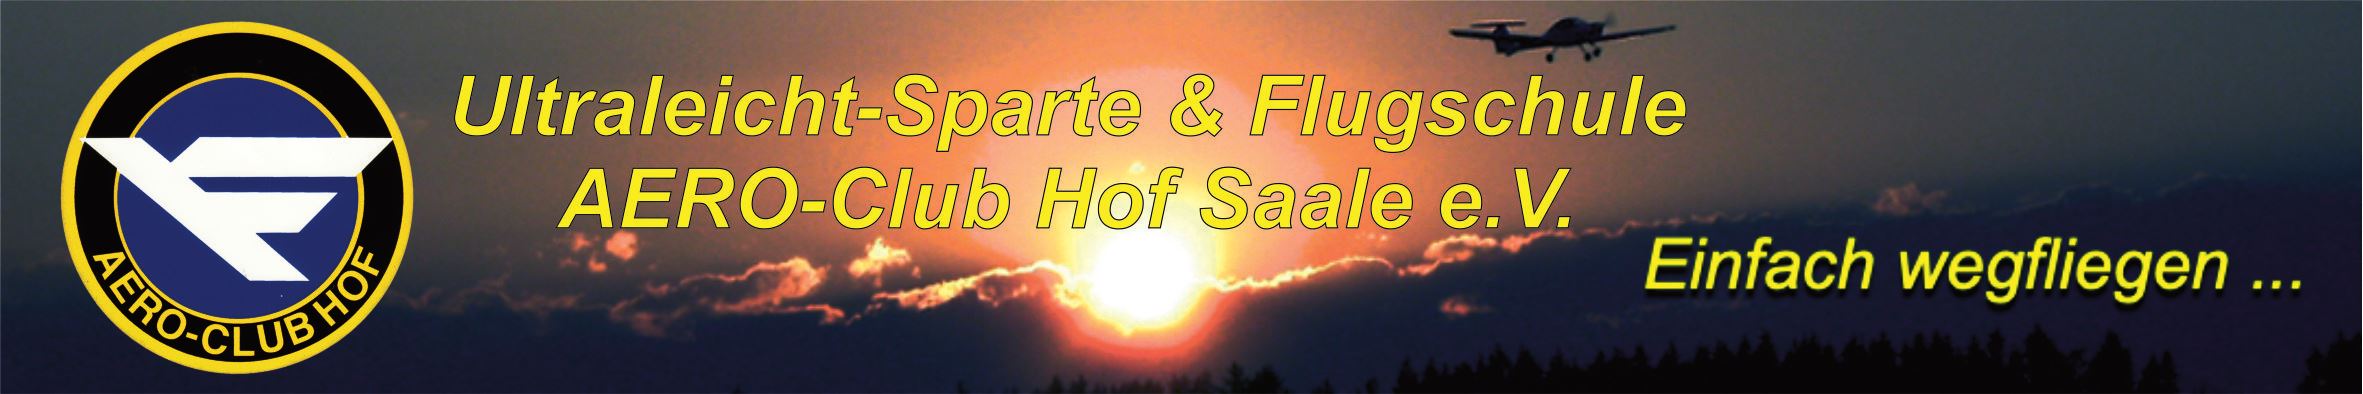 Ultraleicht Flugschule Hof/Saale in EDQM